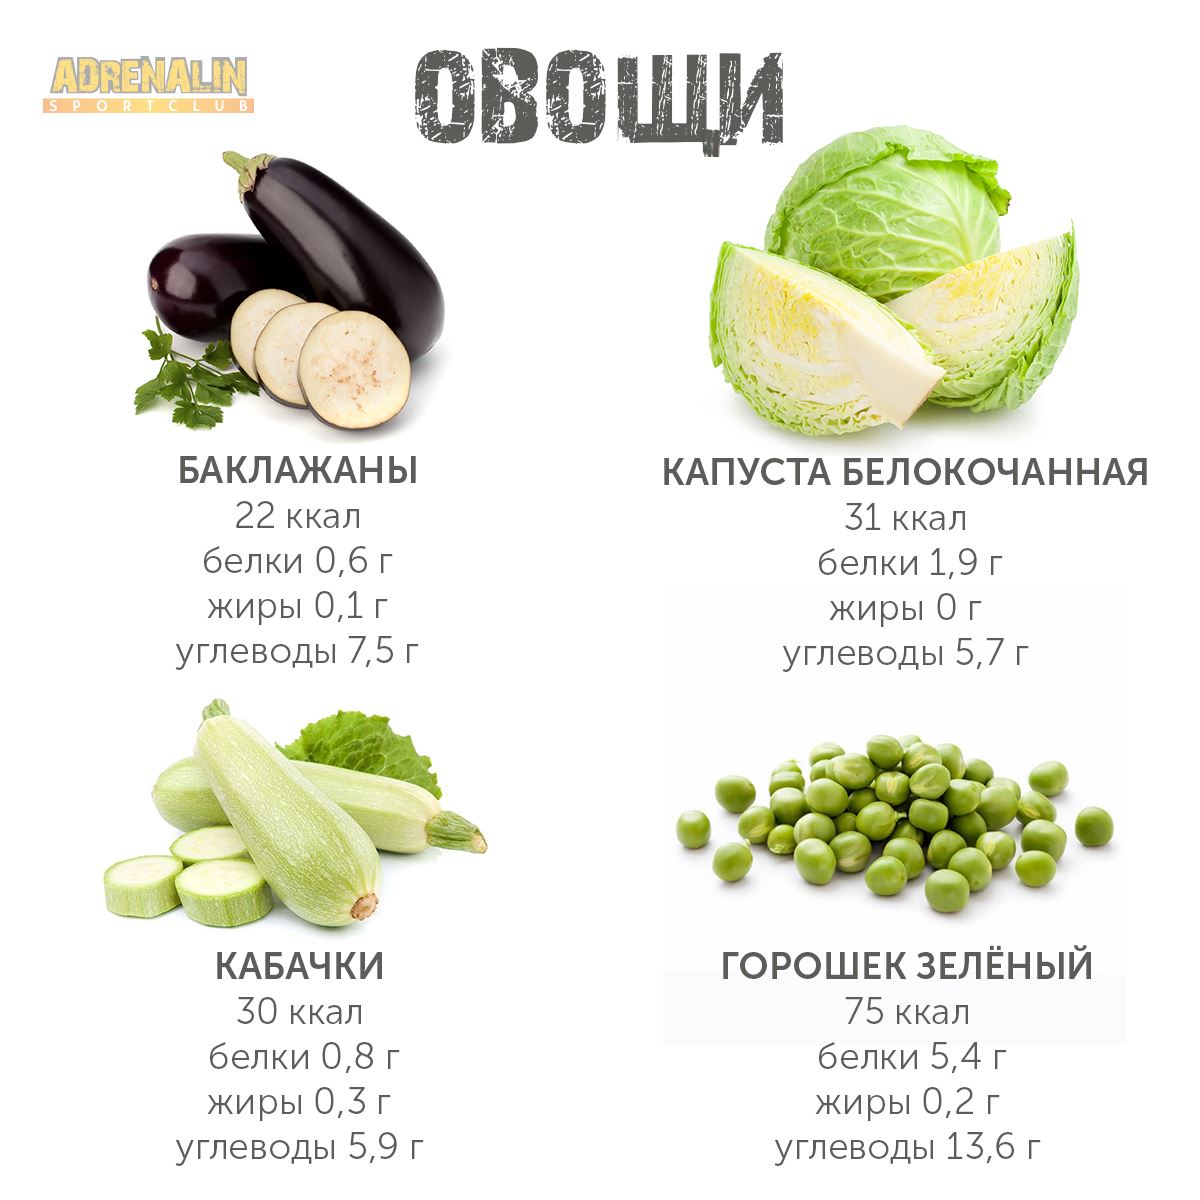 Кабачок - польза и вред, состав, калорийность, как хранить овощ